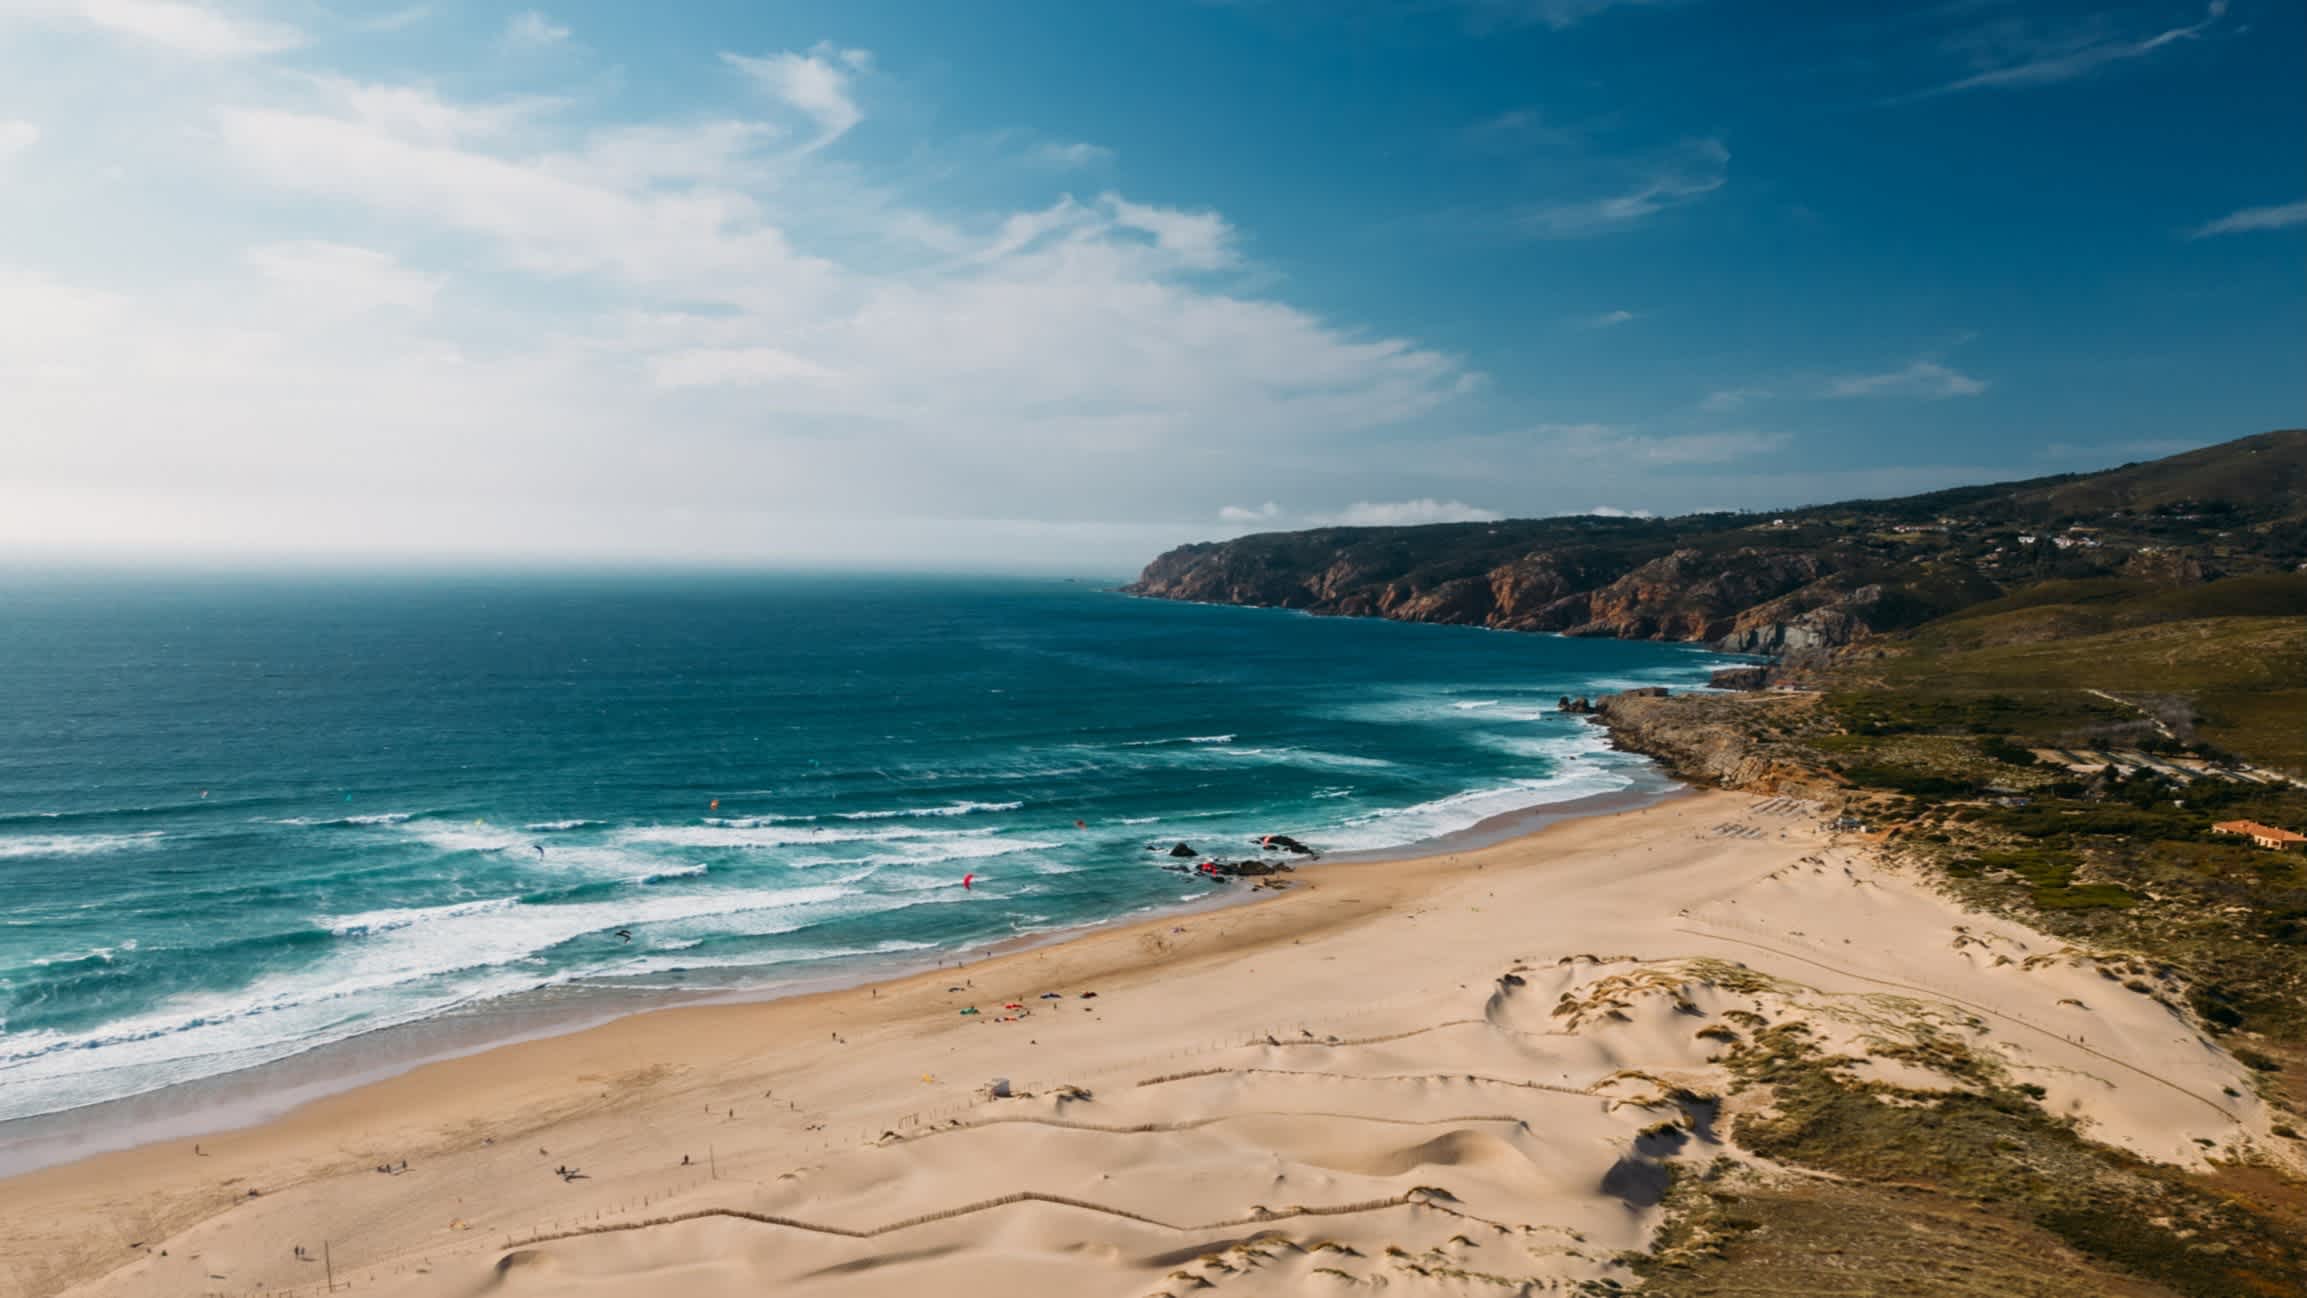 Naturbelassener Strand von Praia do Guincho, Cascais, Portugal mit wolkenfreiem Himmel und Blick auf das weite Meer.